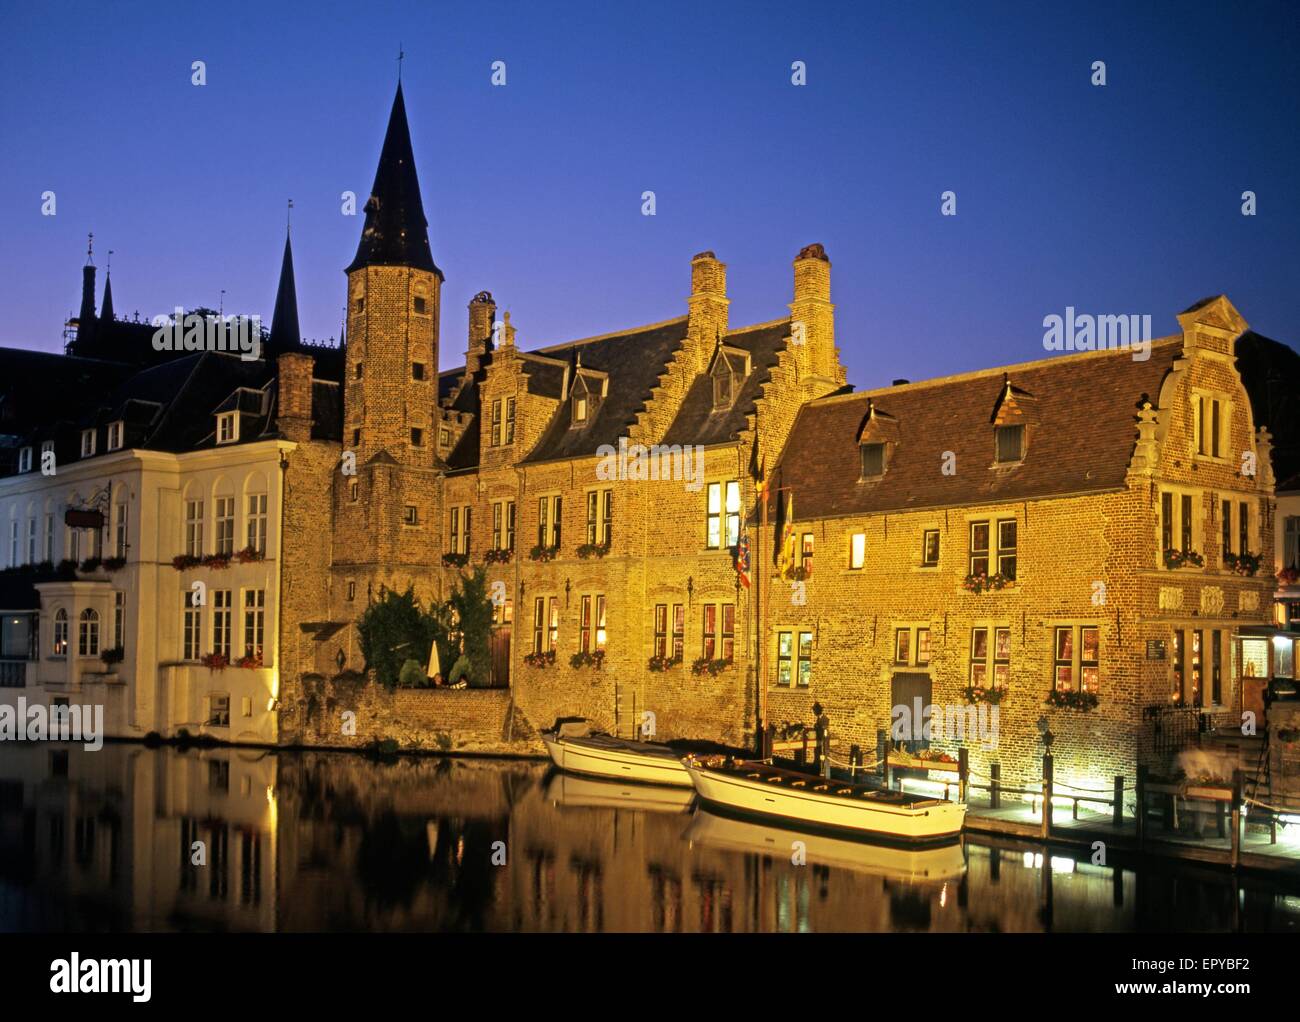 Bateaux et bâtiments le long du canal au crépuscule, Rozenhoedkaai, Huidenvettersplein, Bruges, Flandre occidentale, Belgique, Europe. Banque D'Images